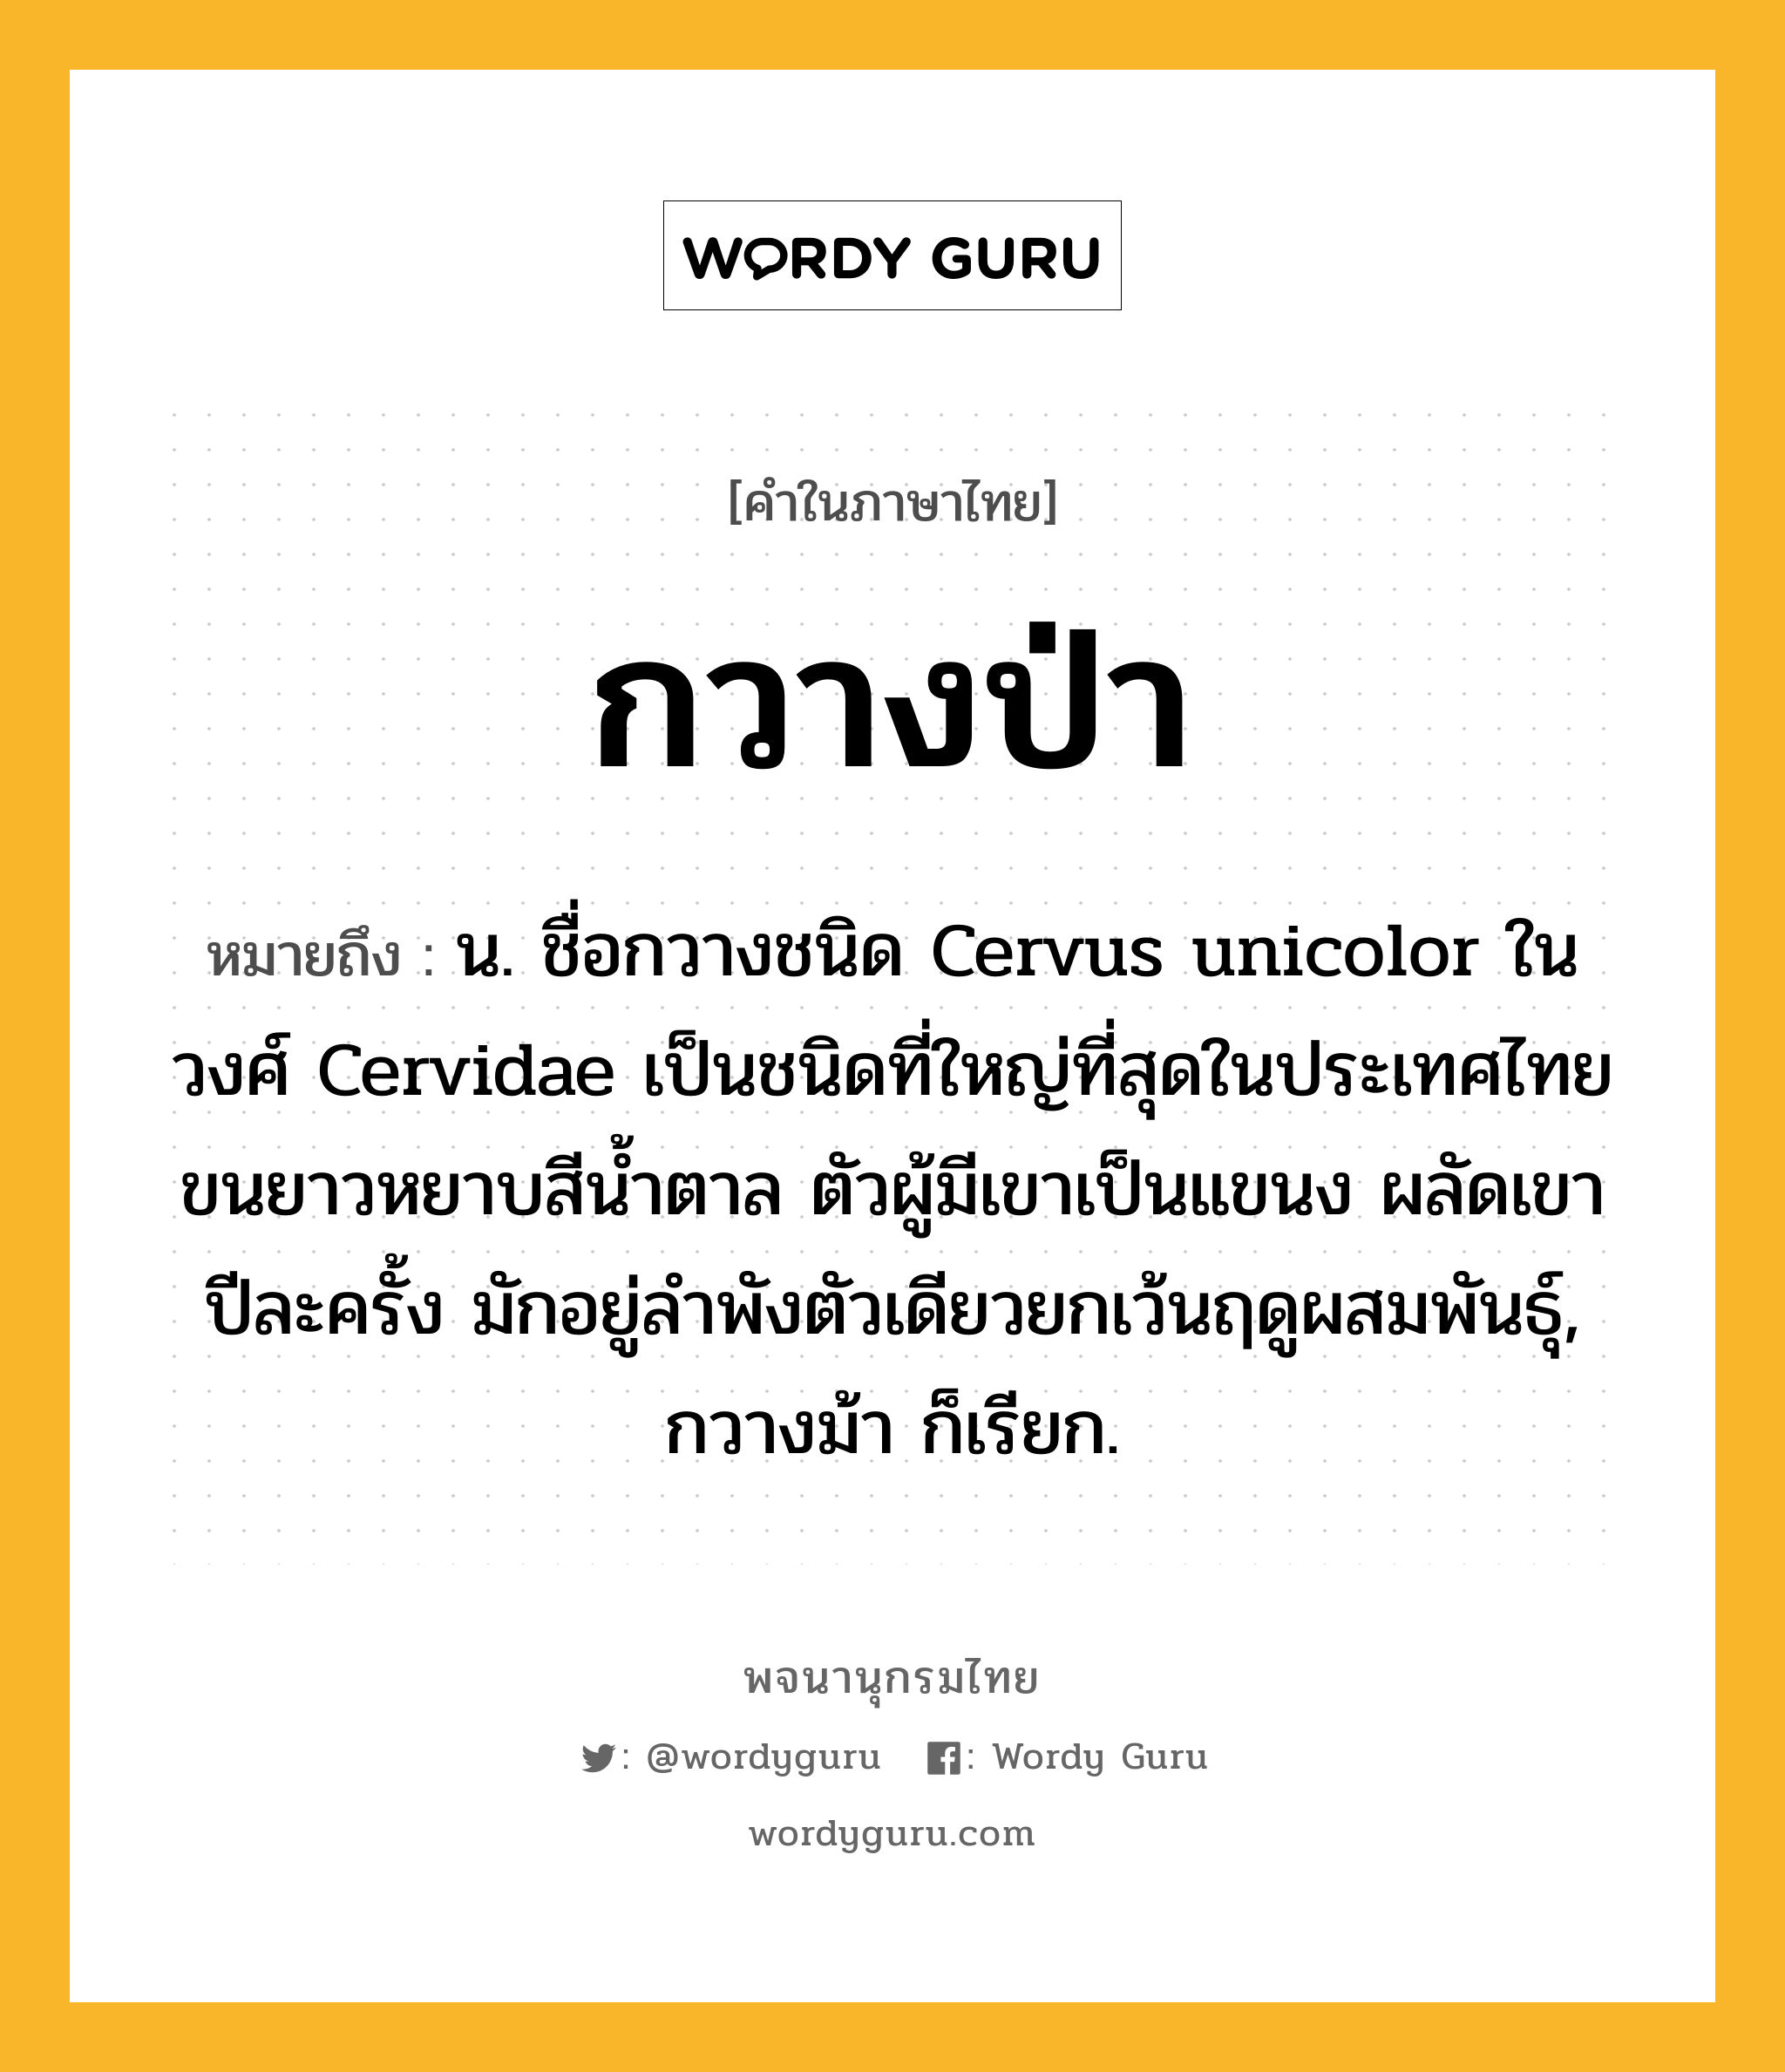 กวางป่า ความหมาย หมายถึงอะไร?, คำในภาษาไทย กวางป่า หมายถึง น. ชื่อกวางชนิด Cervus unicolor ในวงศ์ Cervidae เป็นชนิดที่ใหญ่ที่สุดในประเทศไทย ขนยาวหยาบสีน้ำตาล ตัวผู้มีเขาเป็นแขนง ผลัดเขาปีละครั้ง มักอยู่ลำพังตัวเดียวยกเว้นฤดูผสมพันธุ์, กวางม้า ก็เรียก.